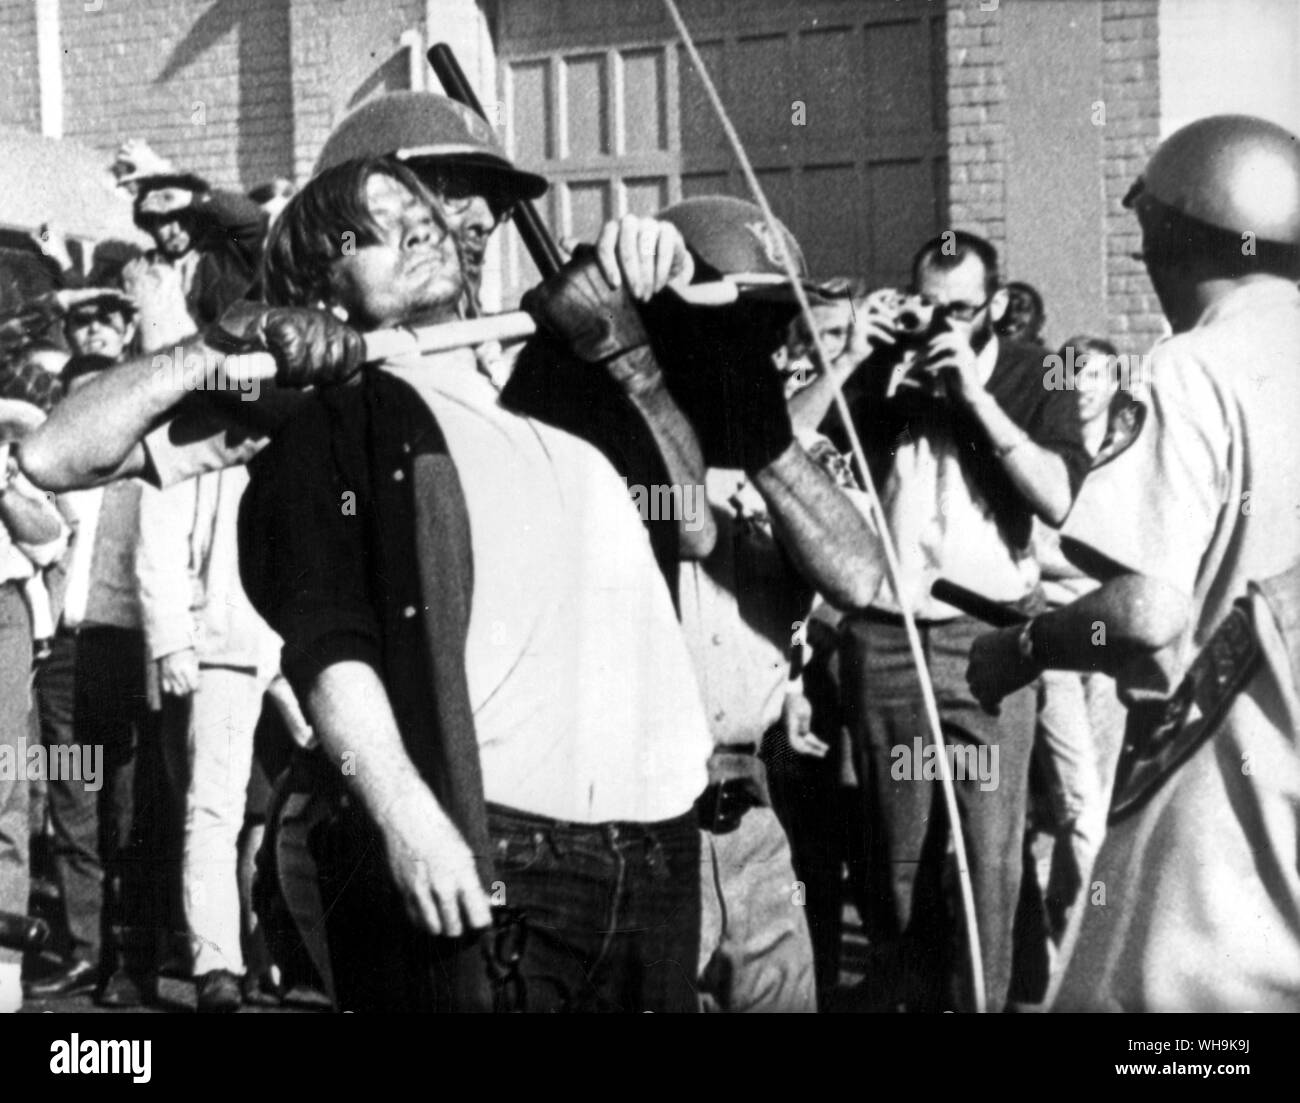 Okt. 1967 20: Oakland: ein Polizist mit seinem Nacht stick Mätzchen von Anti zu stoppen - Entwurf Demonstrator am Oakland Army Induction Center. 10.000 Demonstranten waren an Hand, während der fünfte Tag der Es protestieren. Stockfoto